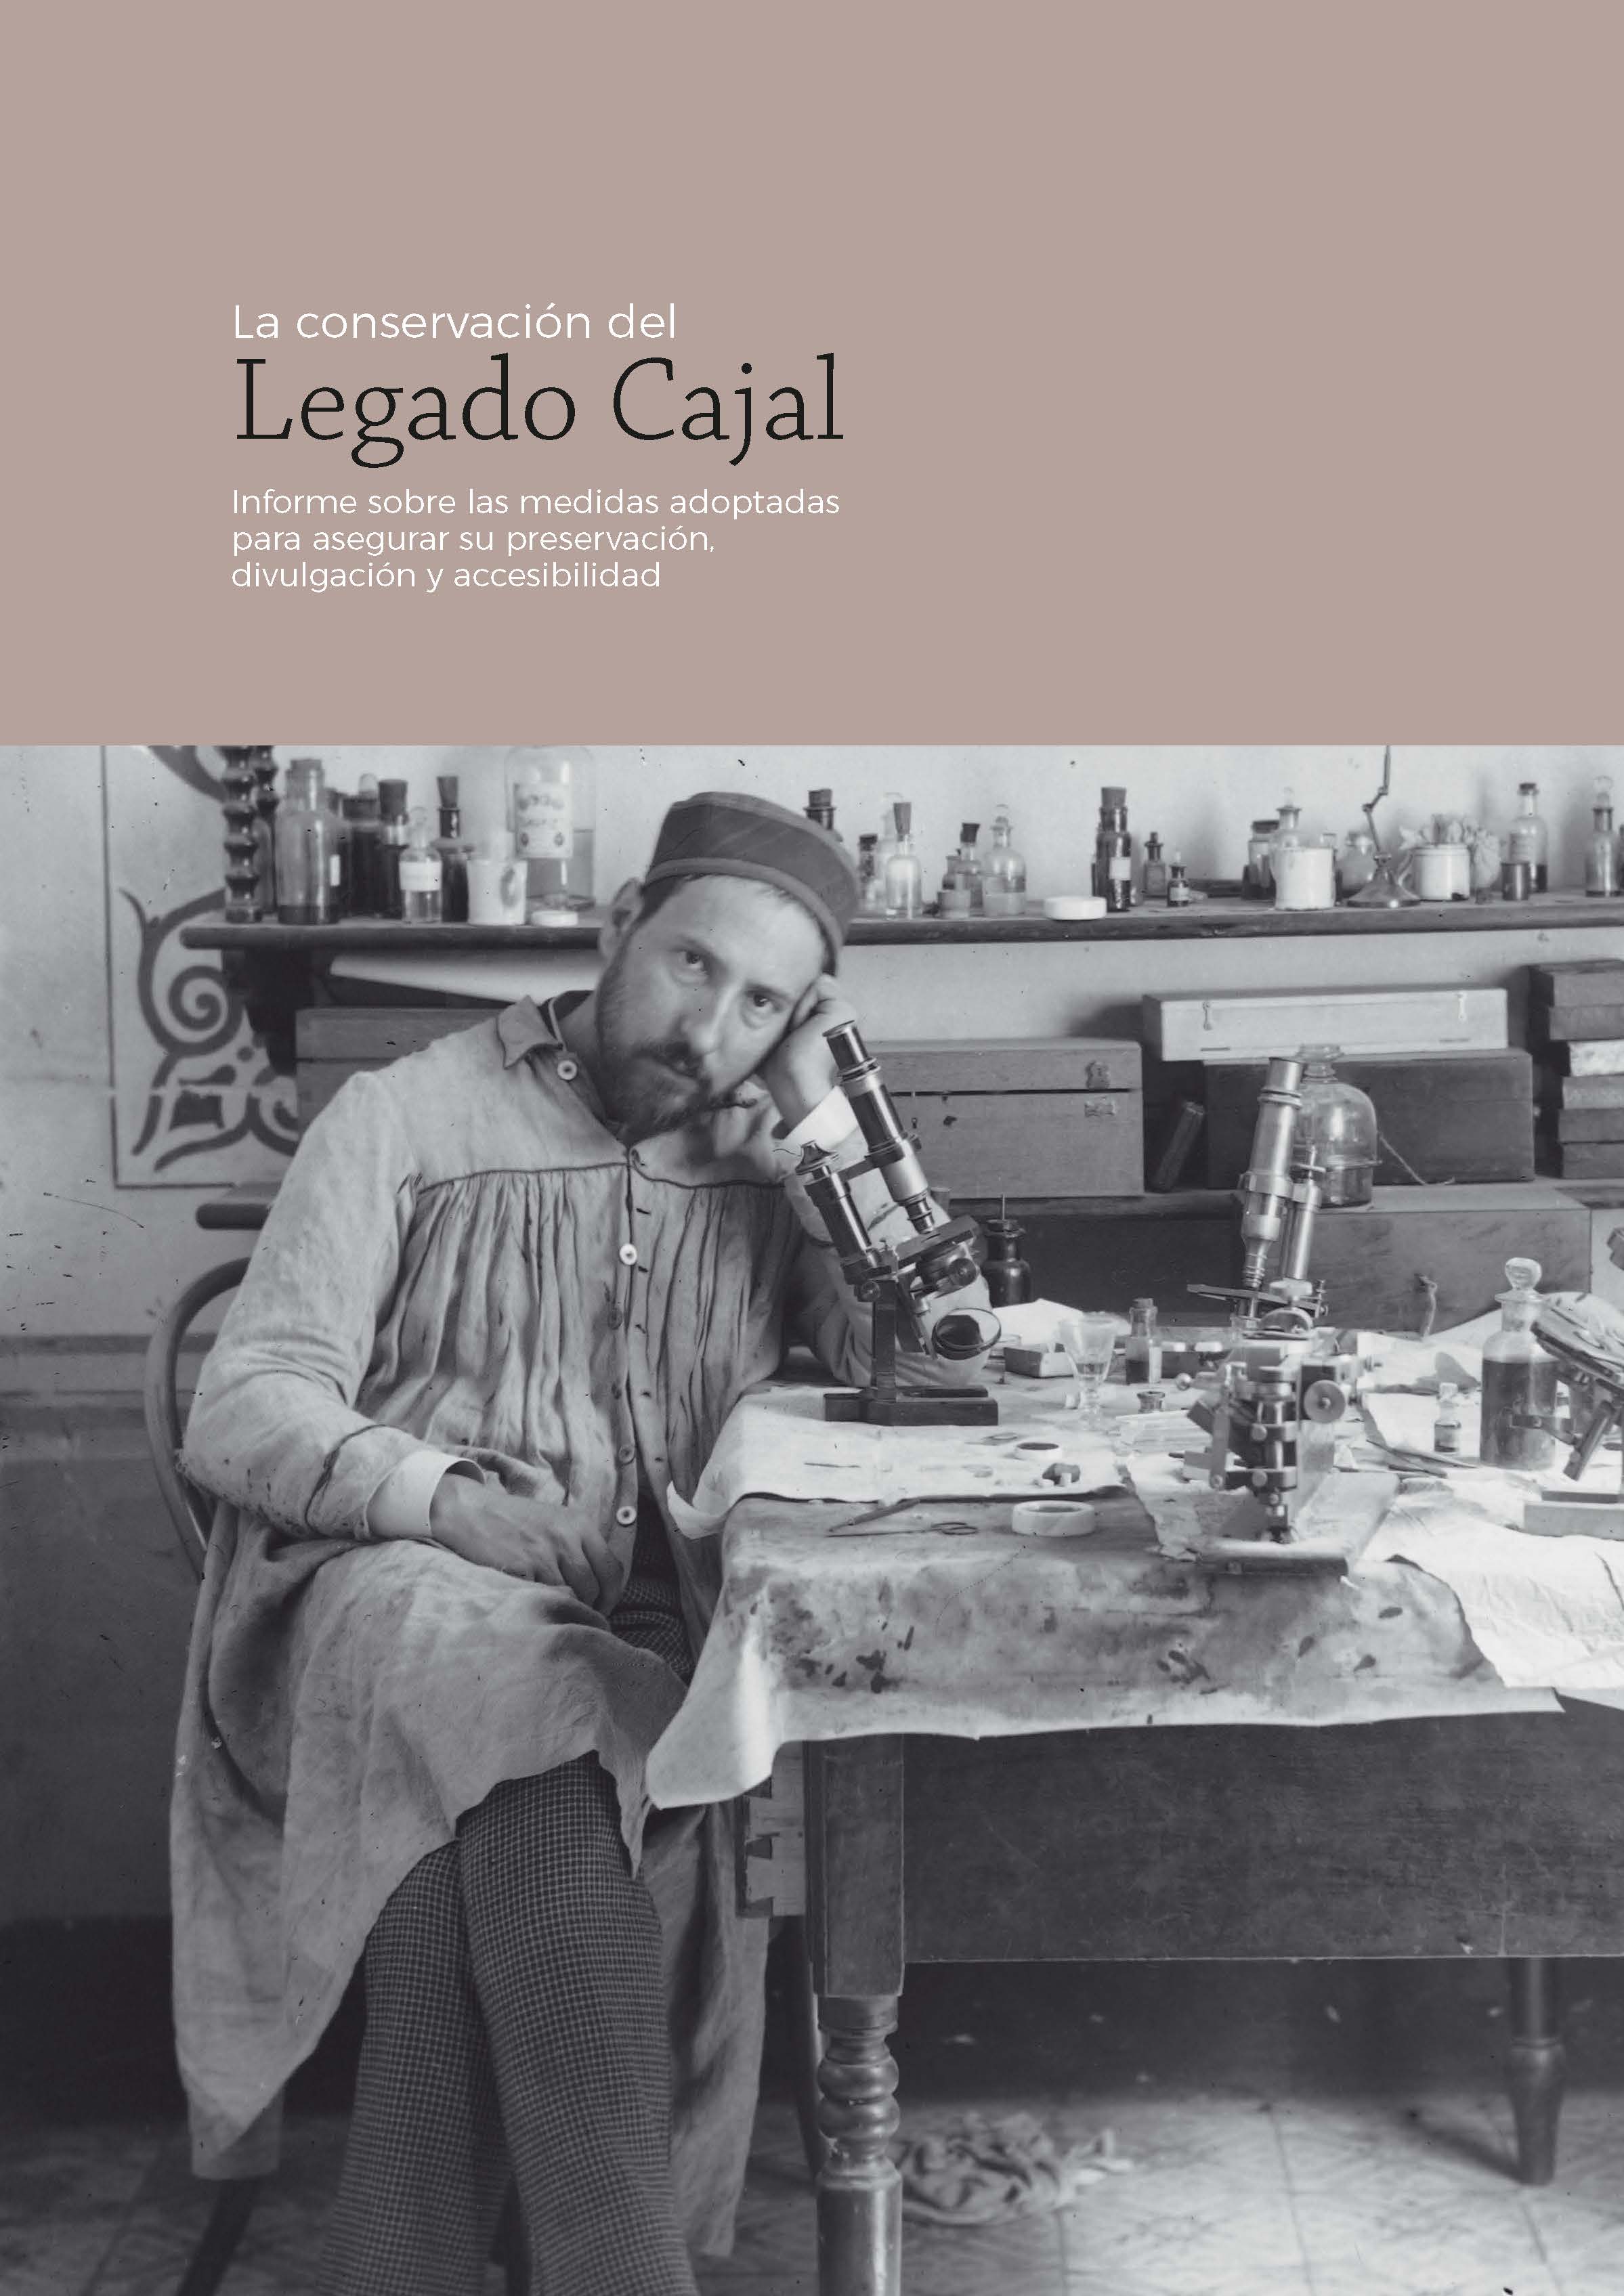 La conservacin del Legado Cajal : informe sobre las medidas adoptadas para asegurar su preservacin, divulgacin y accesibilidad